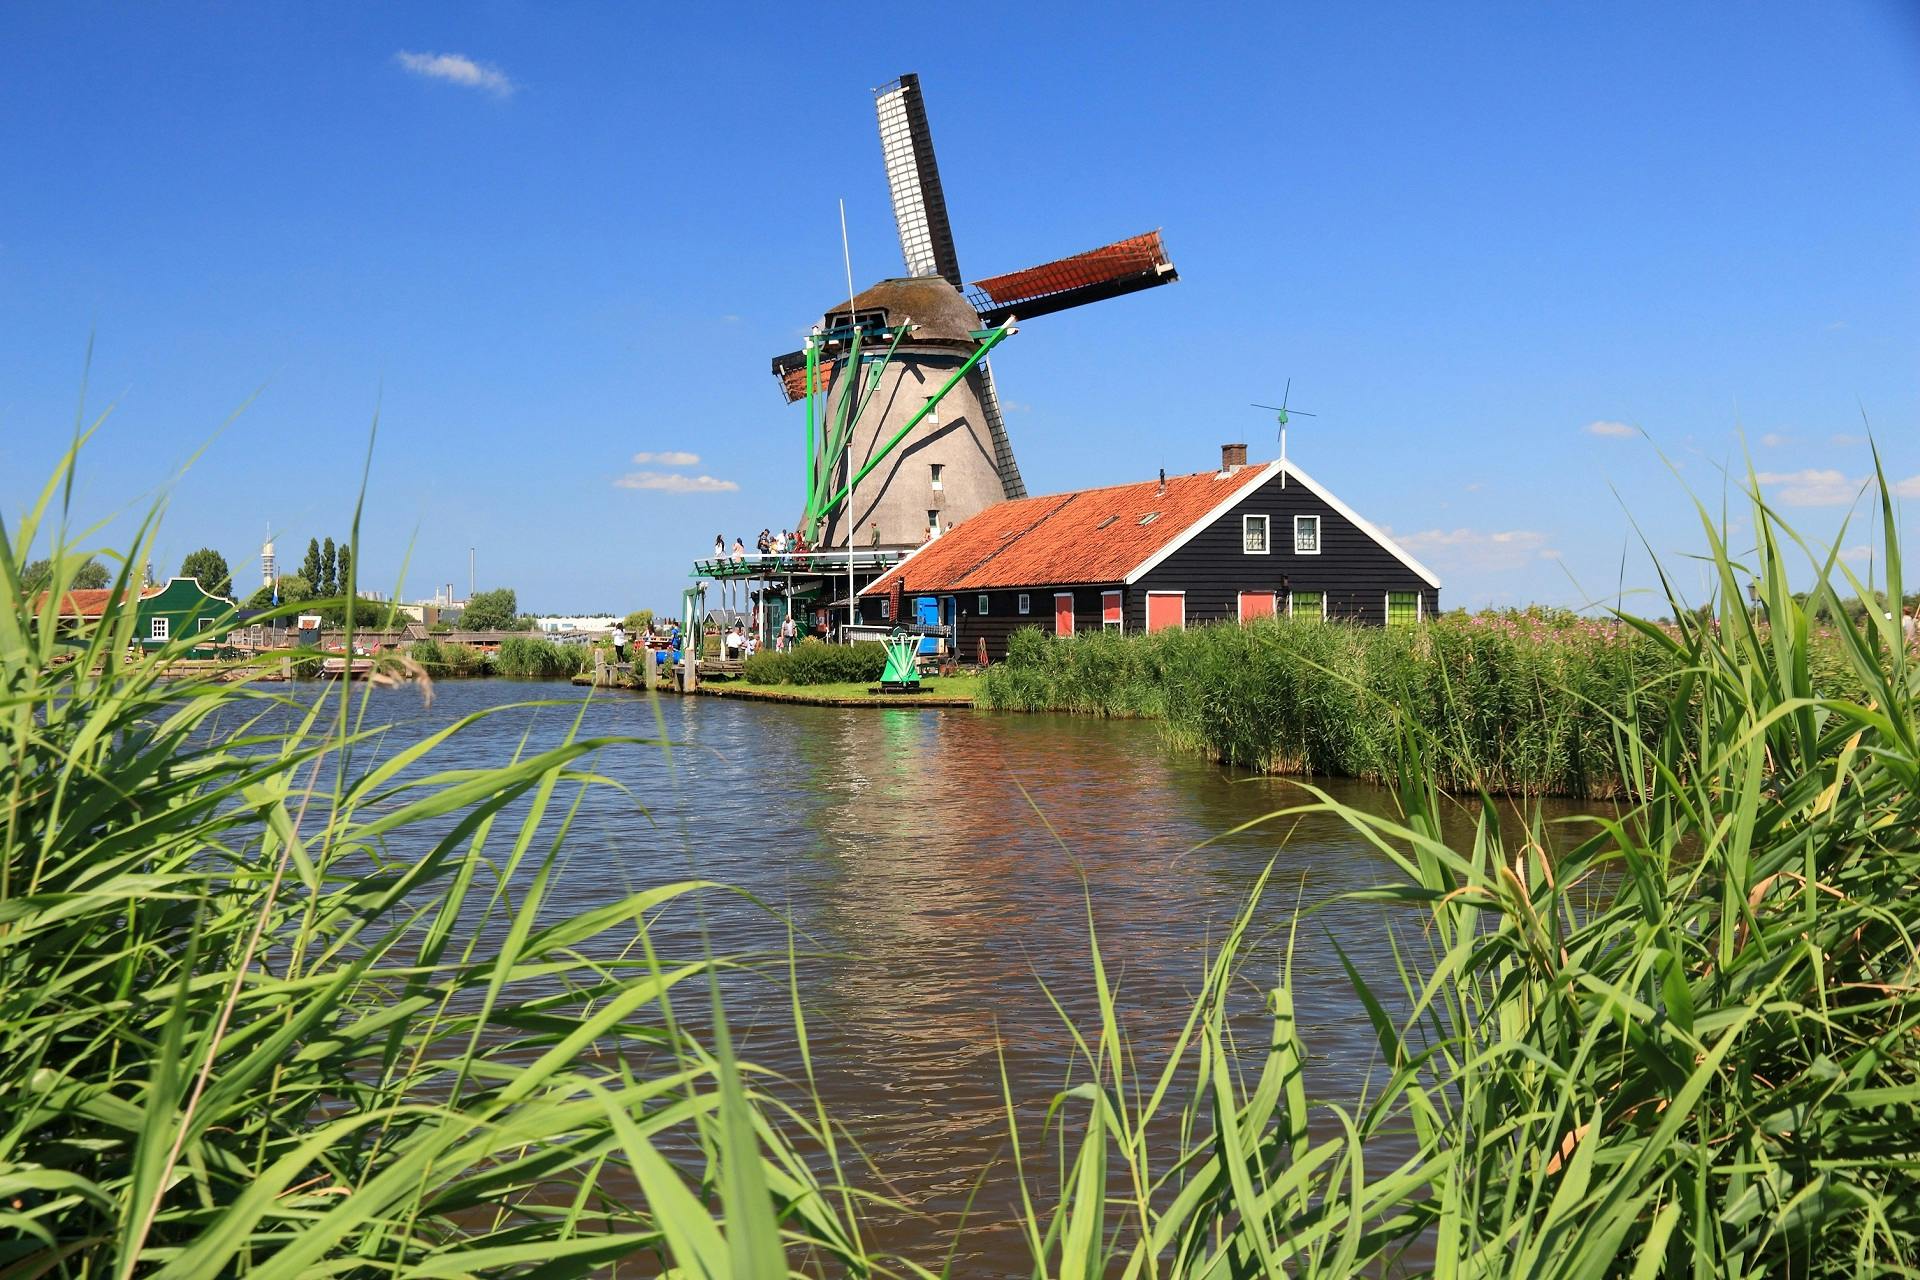 Excursión en grupo a los molinos de Zaanse Schans, Edam, Volendam en Marken